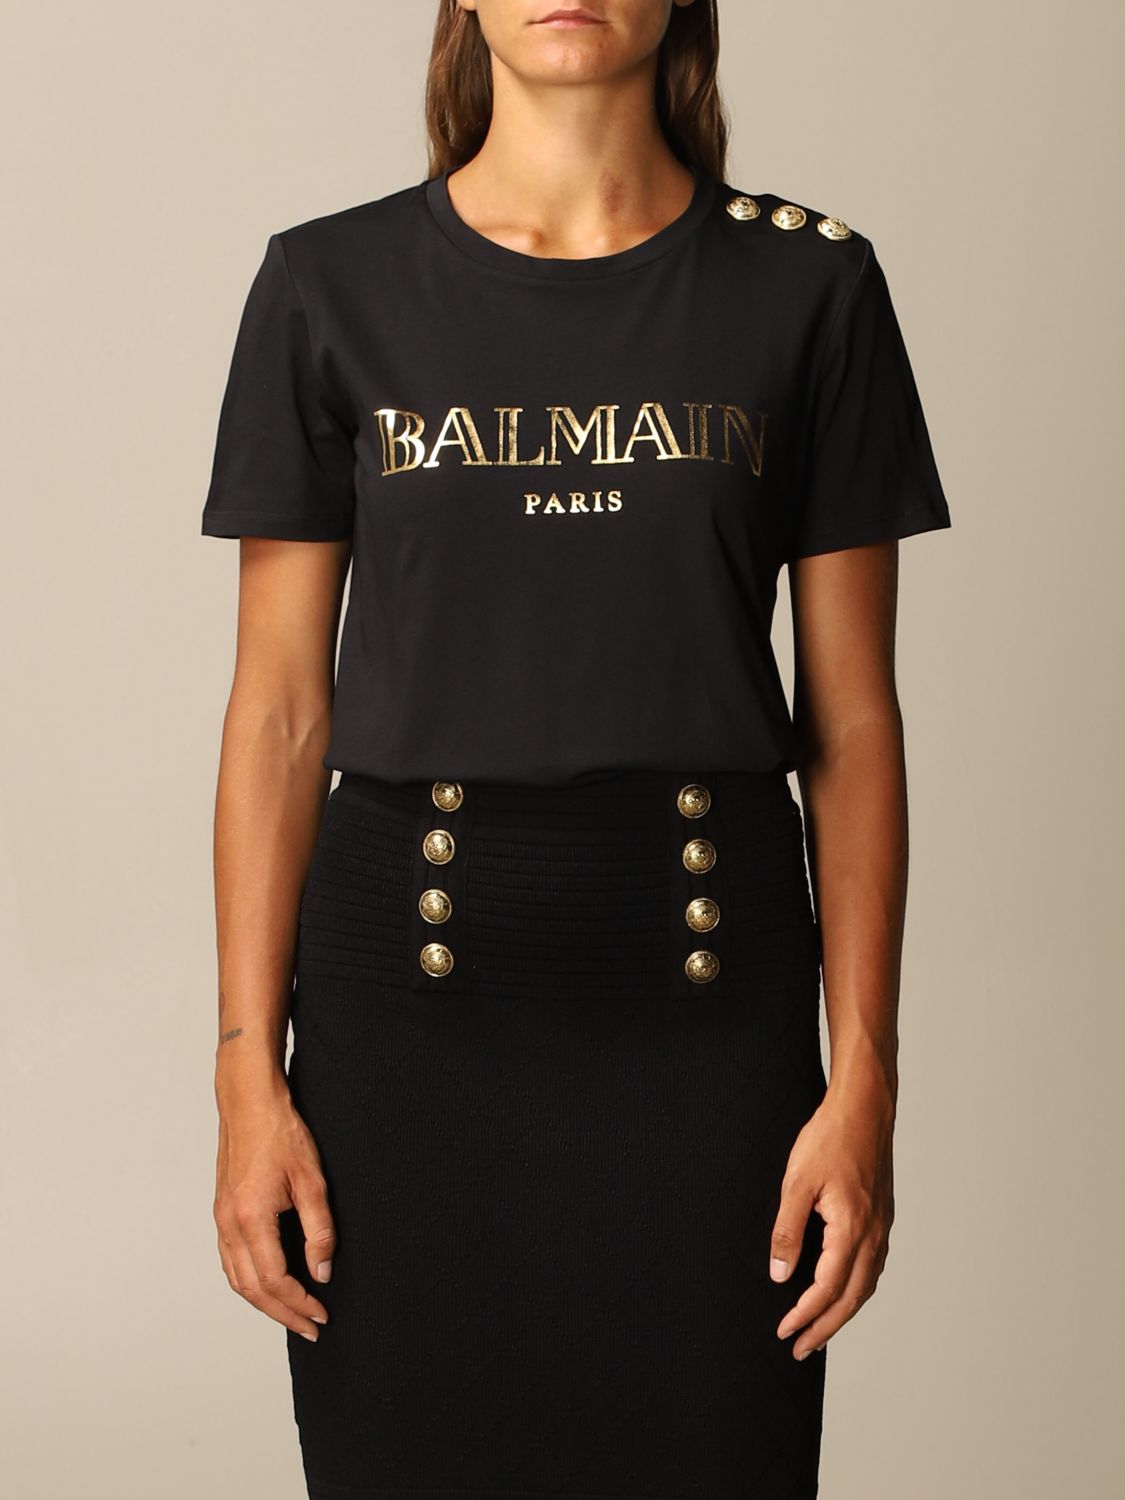 BALMAIN: cotton T-shirt with logo and buttons - Black | Balmain t-shirt ...